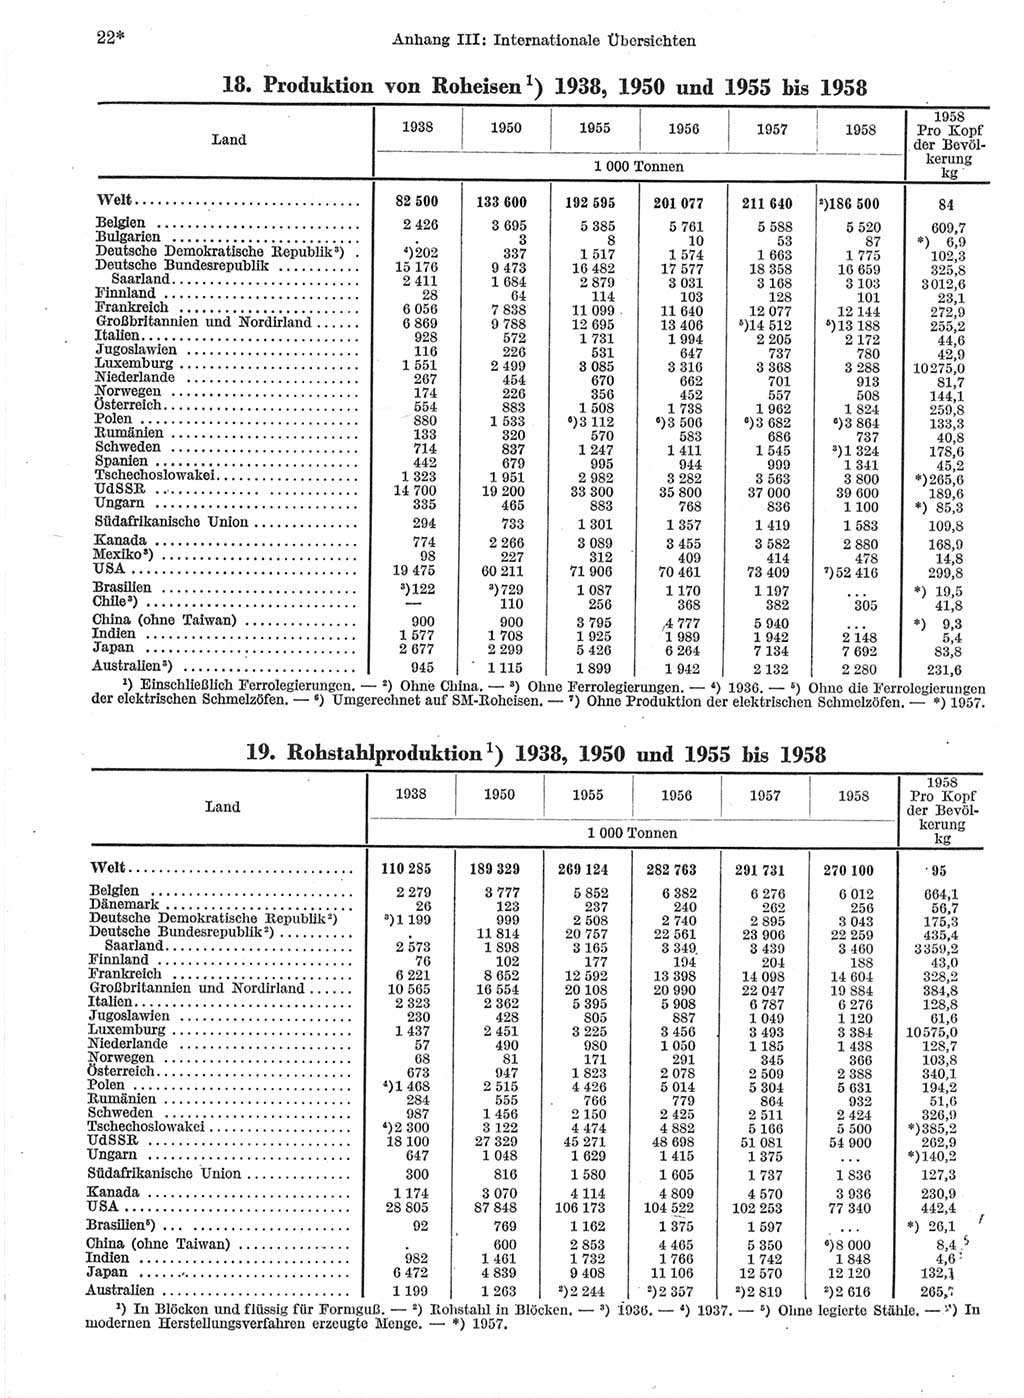 Statistisches Jahrbuch der Deutschen Demokratischen Republik (DDR) 1959, Seite 22 (Stat. Jb. DDR 1959, S. 22)